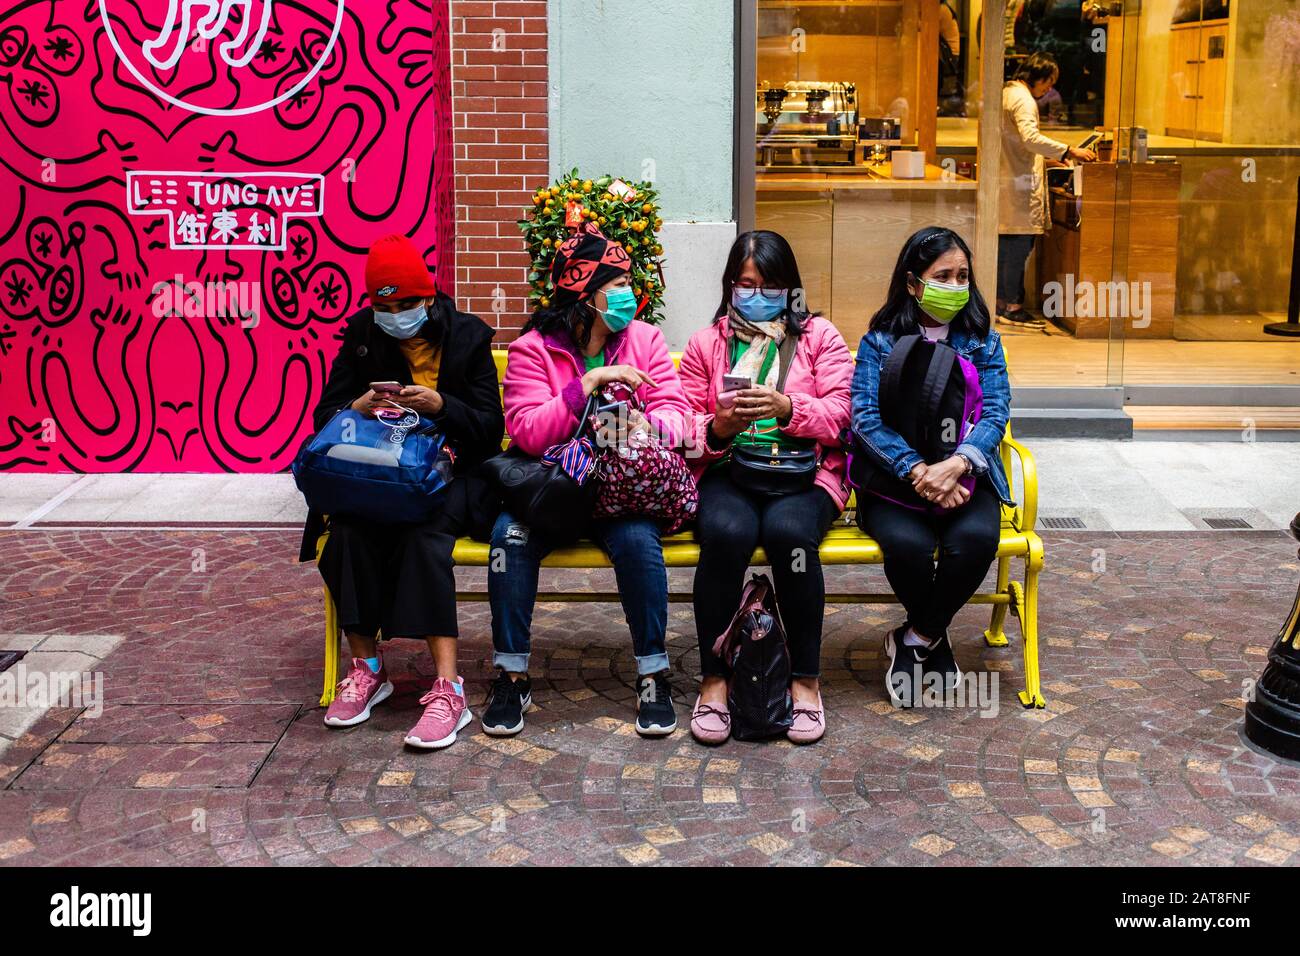 26 gennaio 2020, Hong Kong, Cina: Persone che indossano maschere facciali come precauzione per lo scoppio di Coronavirus a Hong Kong.. Alla luce di un focolaio di coronavirus a Hong Kong i cittadini indossavano maschere facciali per timore di contrarre l'influenza. A causa del panico diffuso e delle scarse forniture, i cittadini sono stati messi in coda per acquistare maschere facciali e igienizzatori per le mani. (Credit Image: © Willie Siau/SOPA Images via ZUMA Wire) Foto Stock